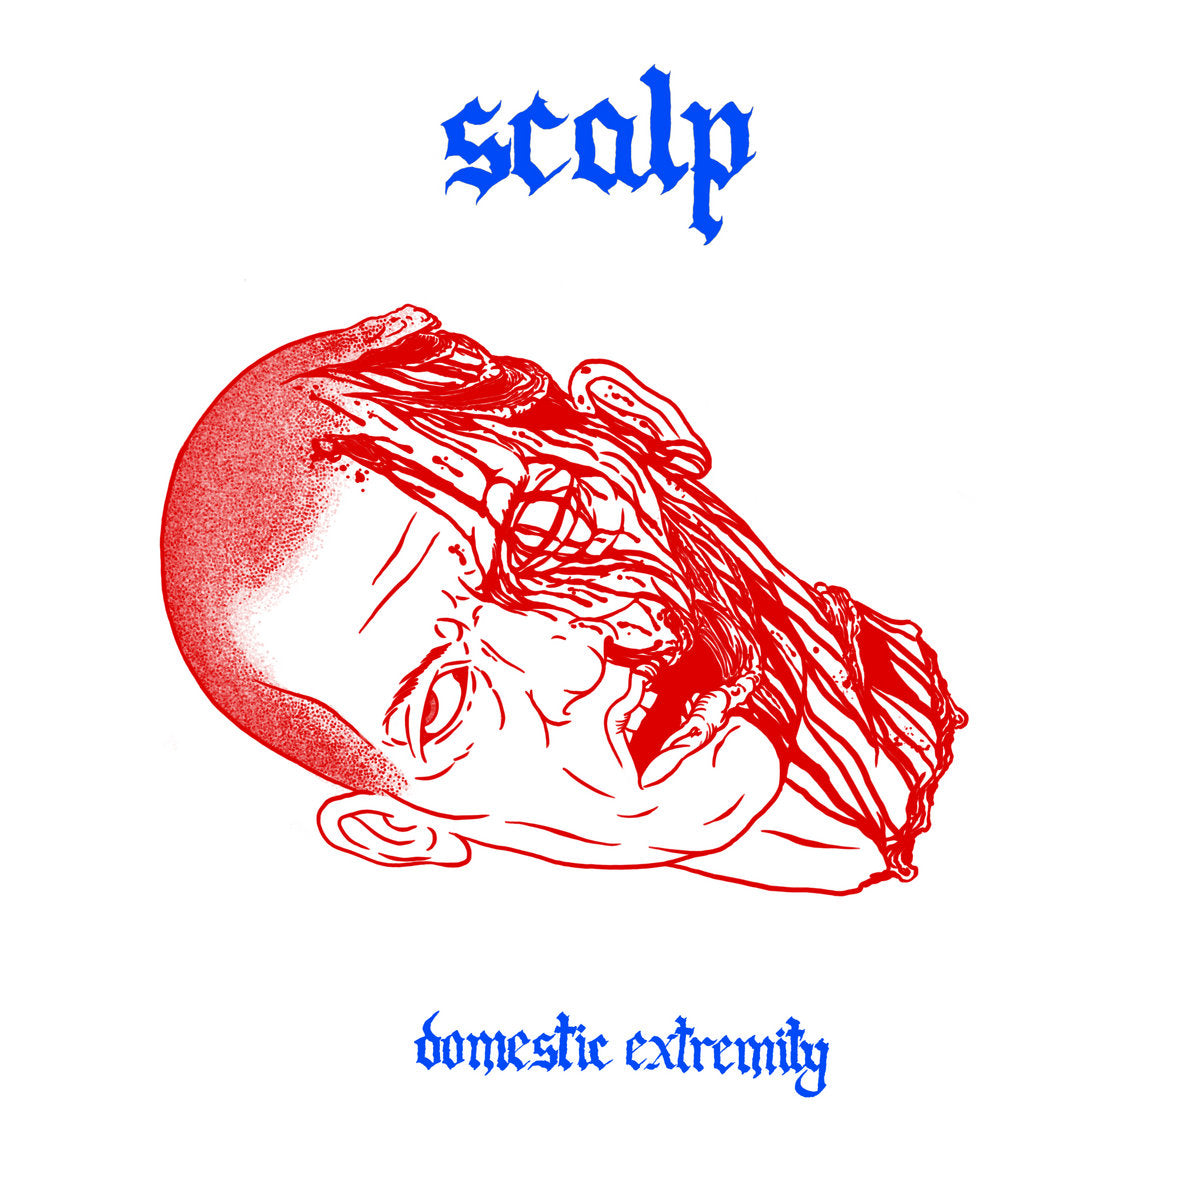 Scalp "Domestic Extremity" 12" Vinyl